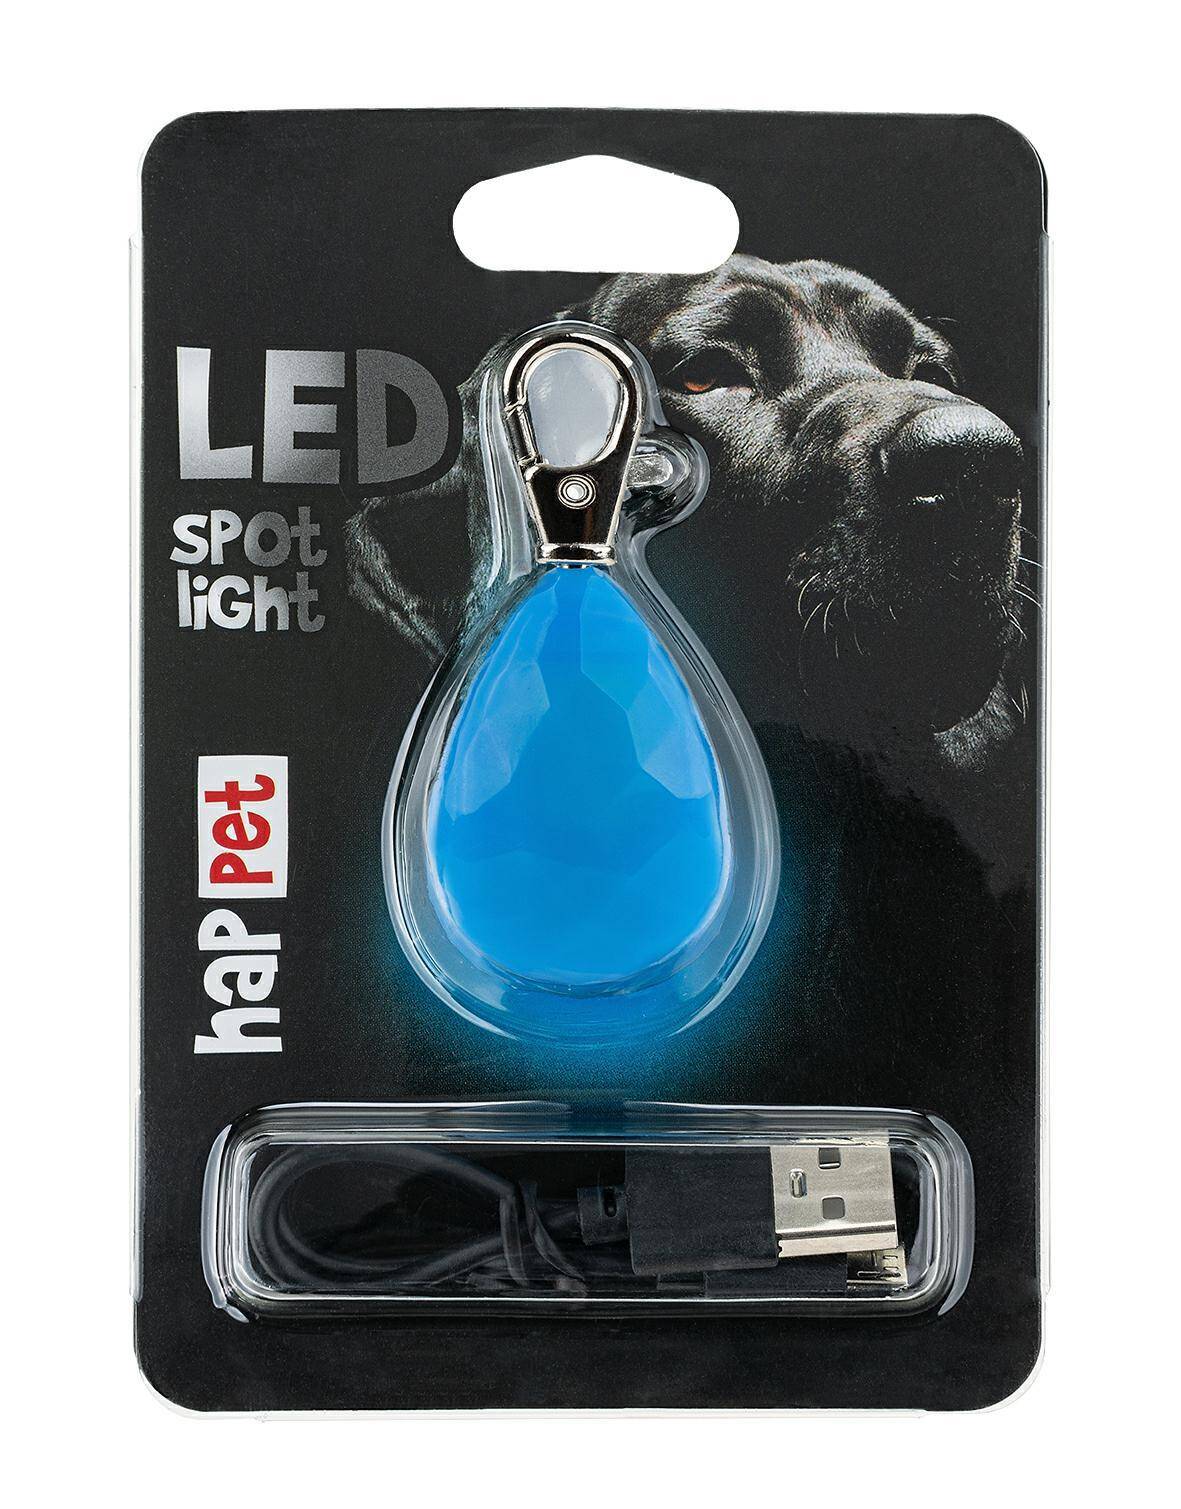 LED spot light blue diamond (Photo 1)